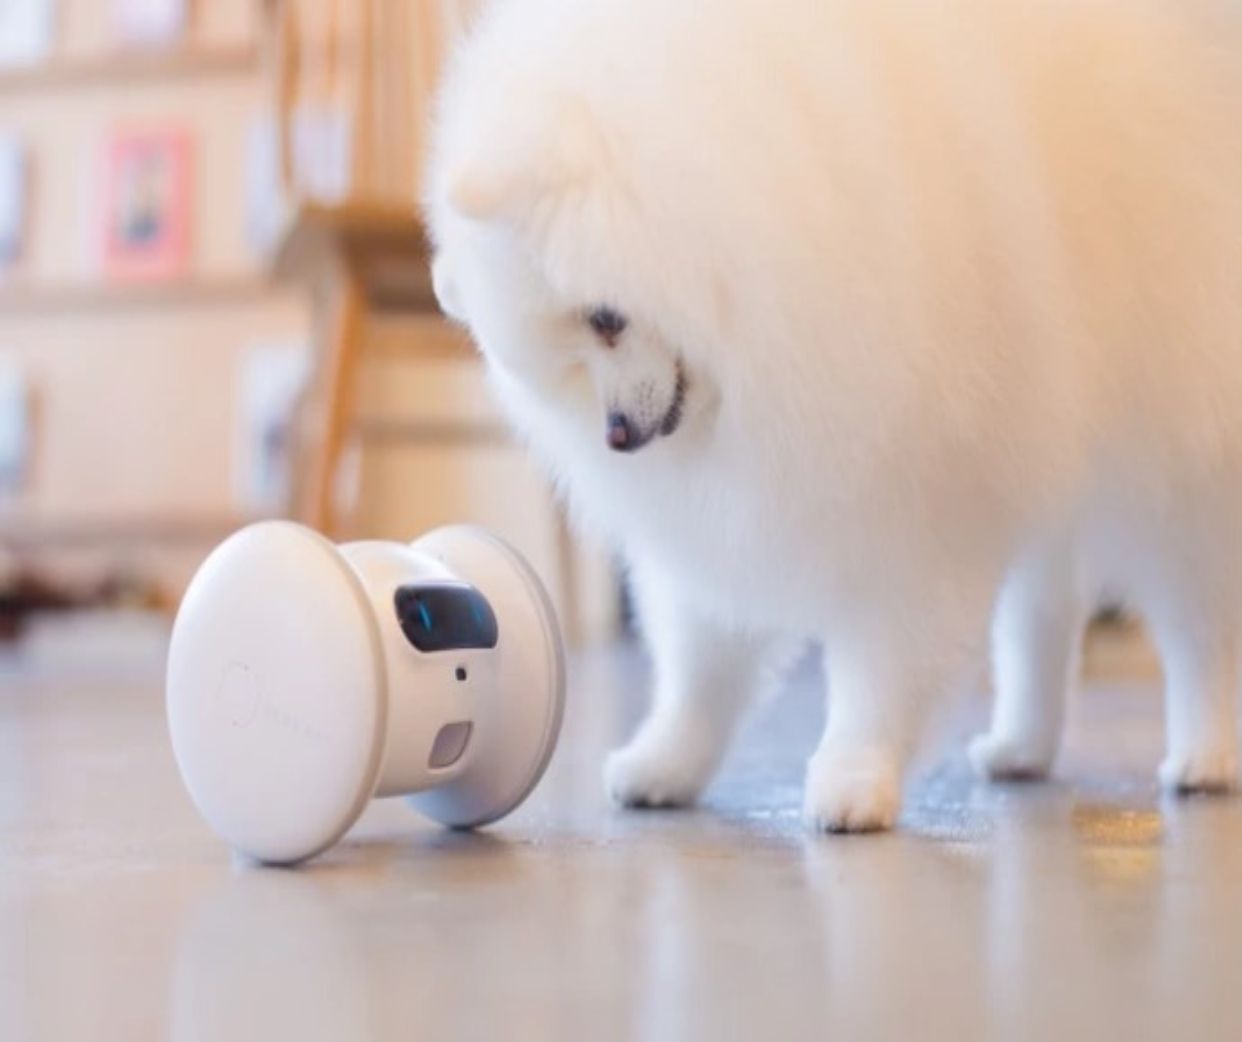 La última tecnología en el hogar que nos ayuda si tenemos mascotas